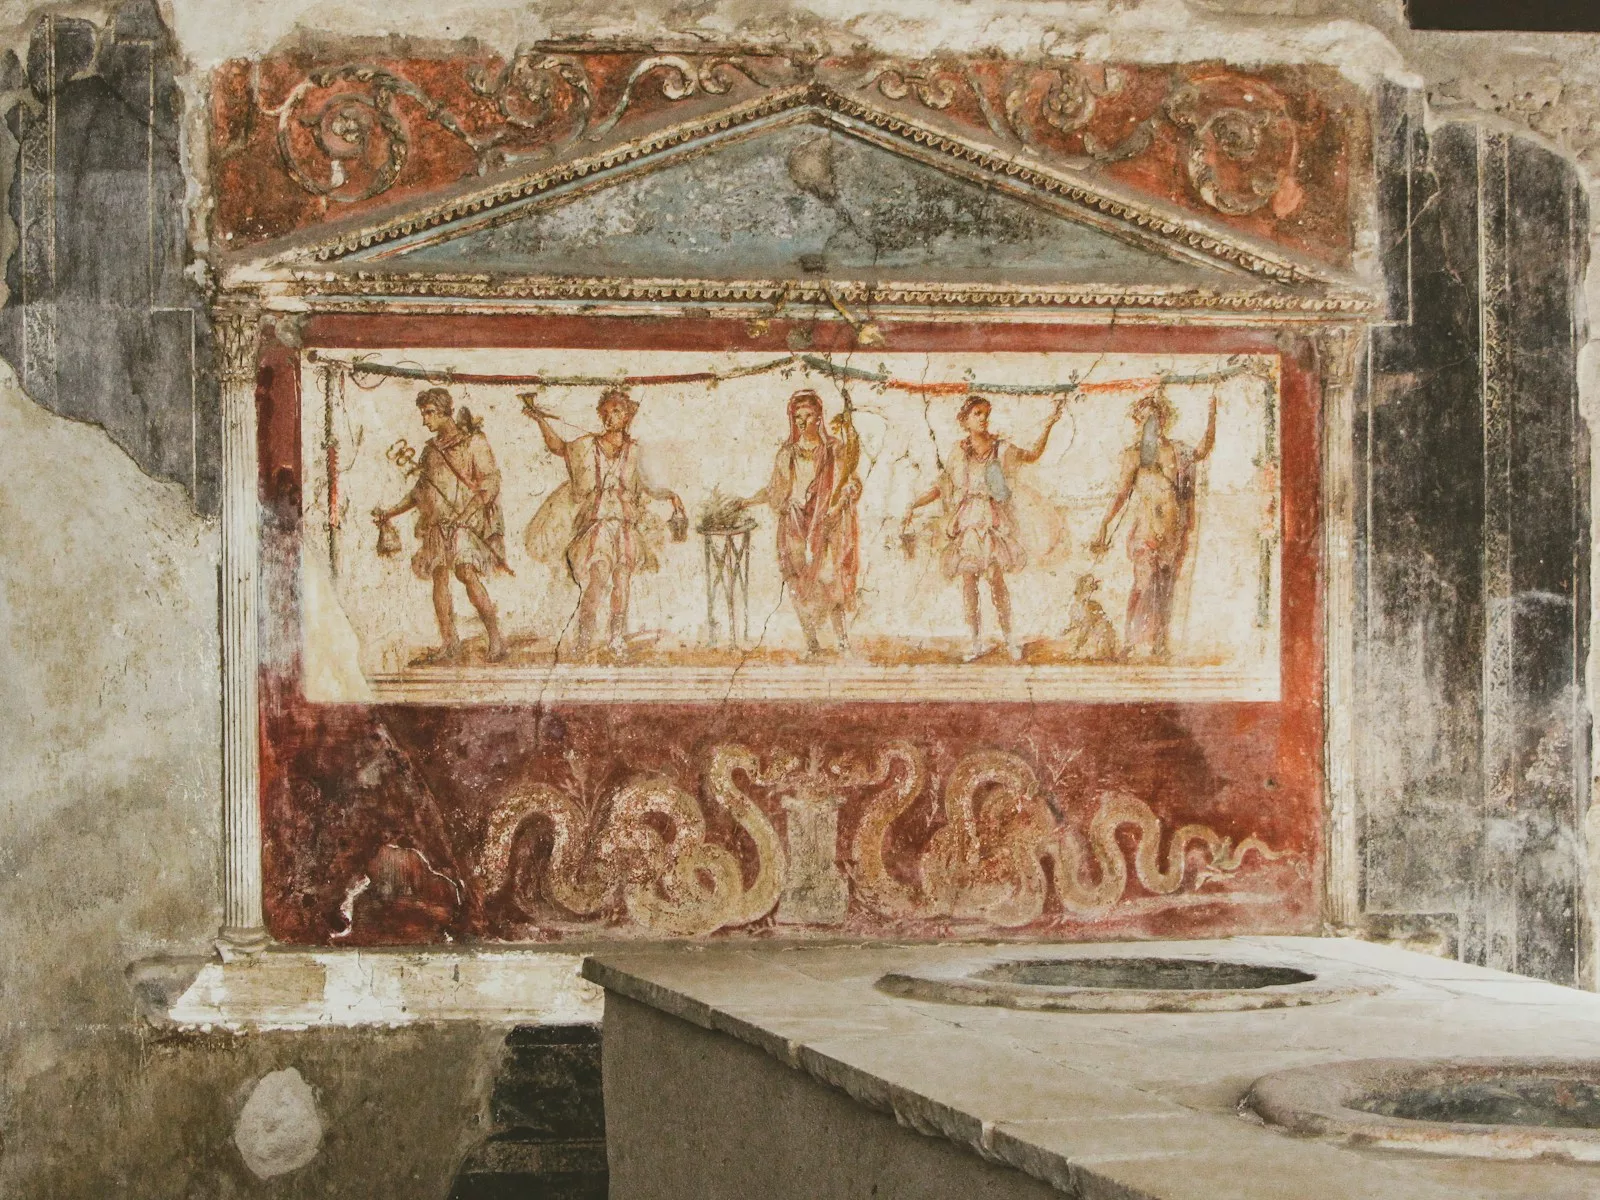 Comment les Romains vénéraient-ils les dieux dans leurs foyers ?